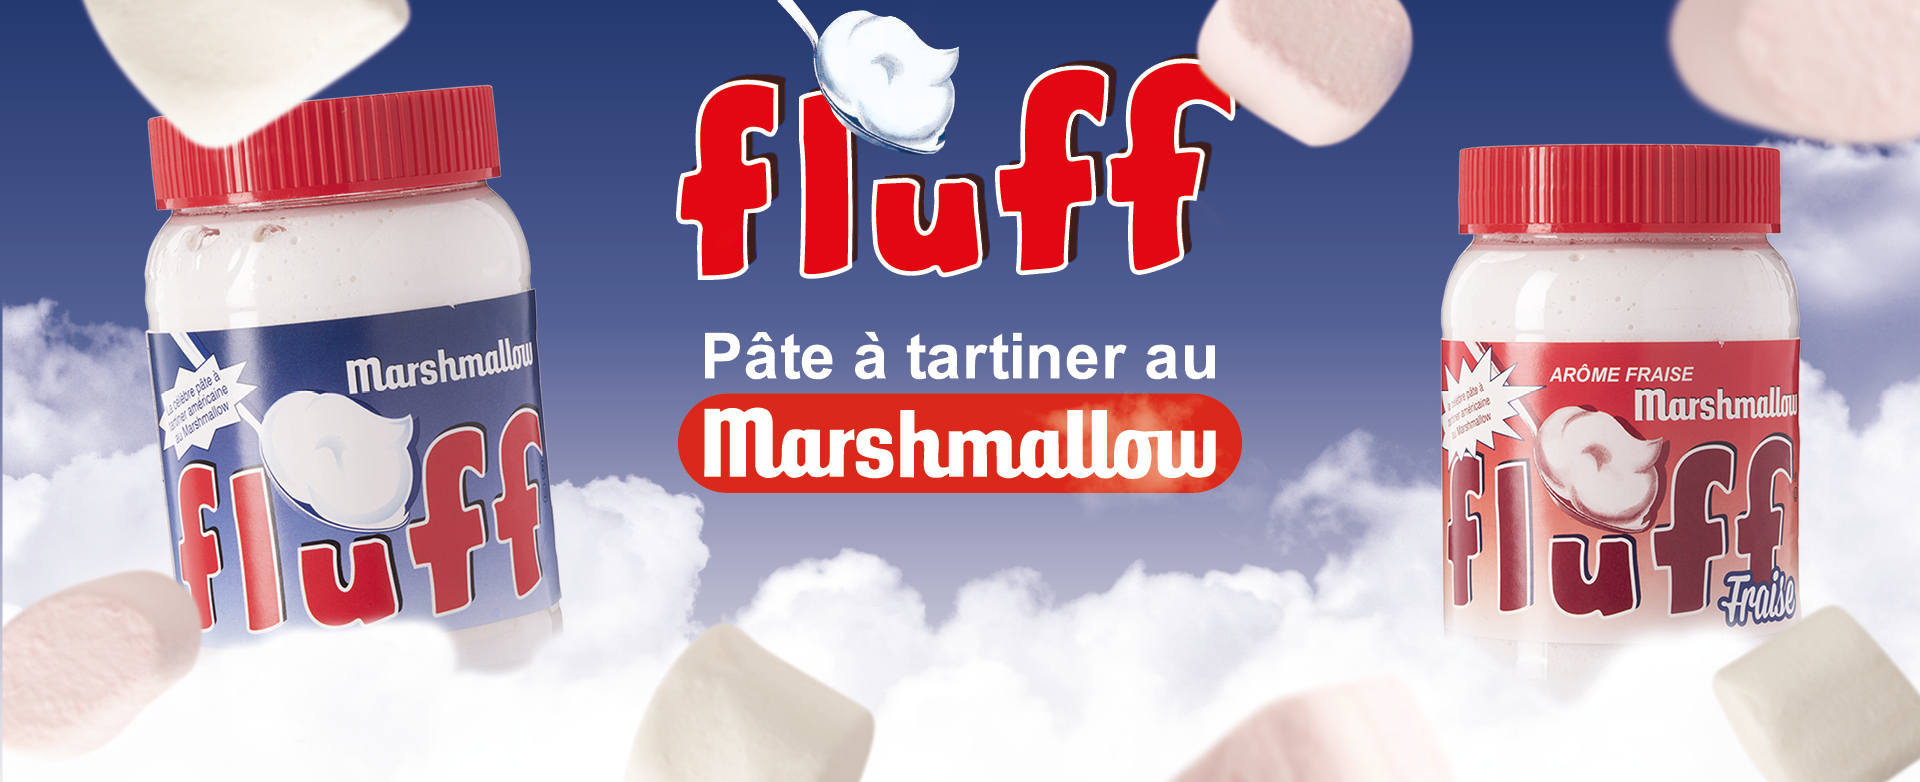 Actualités - Le Marshmallow Fluff enfin disponible en France !